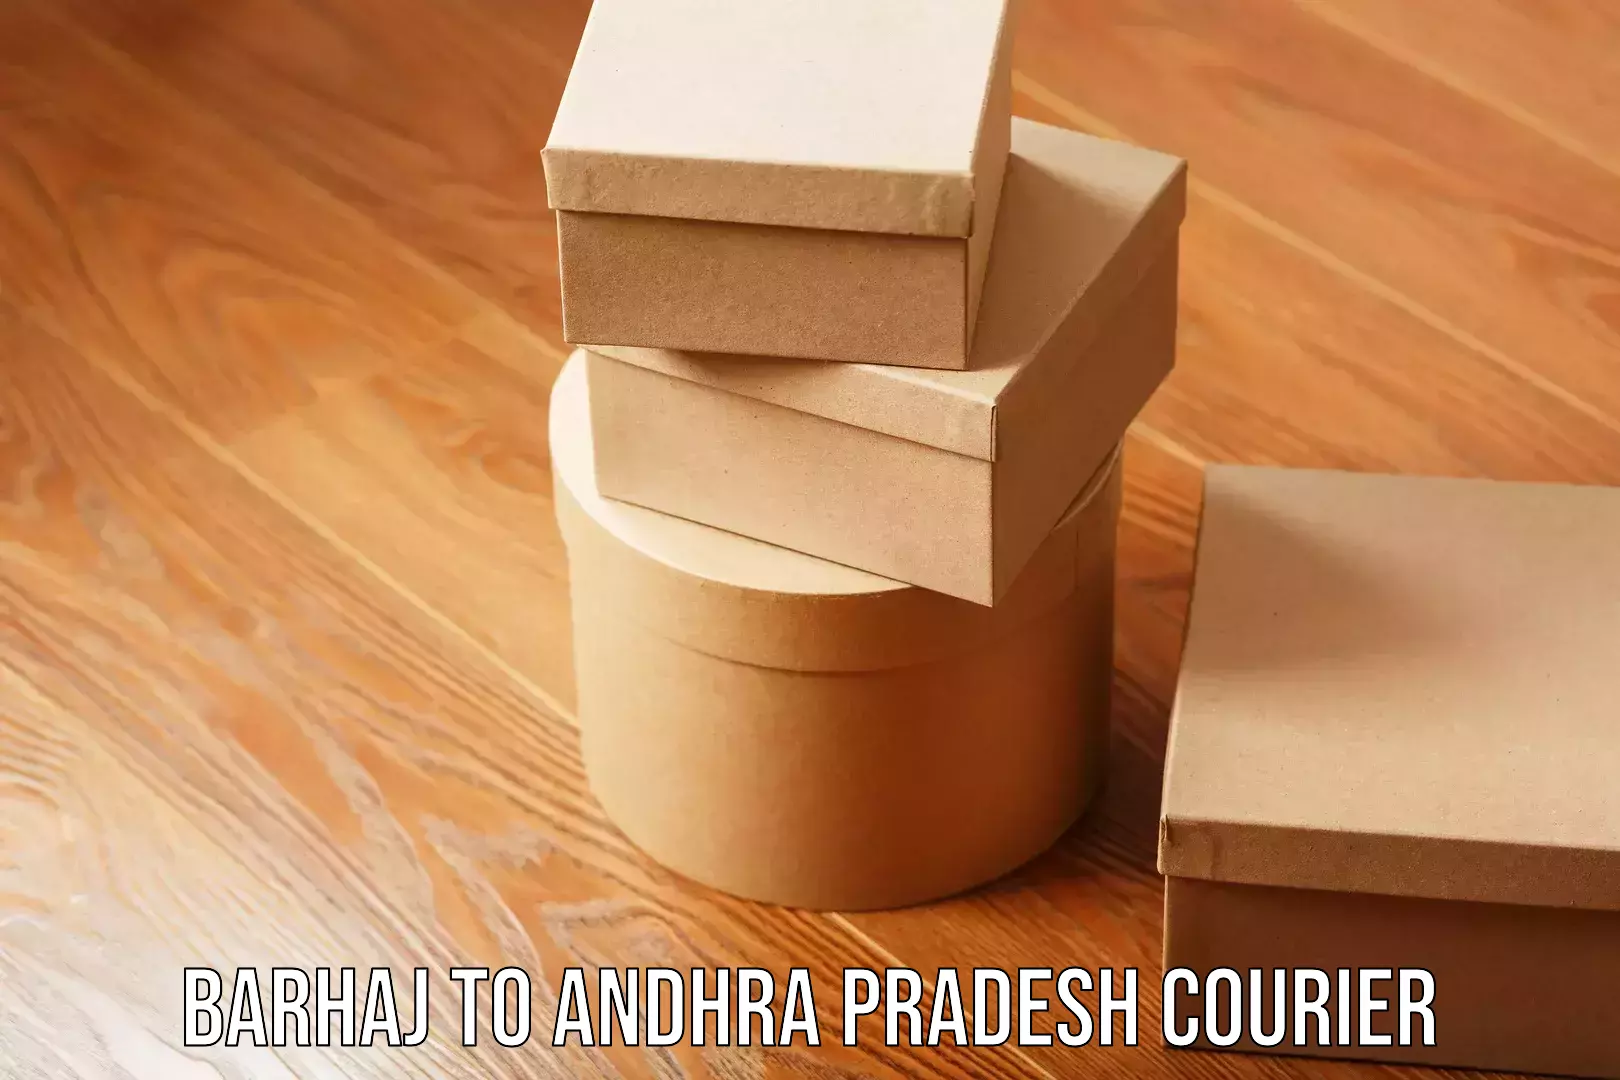 Bulk courier orders Barhaj to Andhra Pradesh